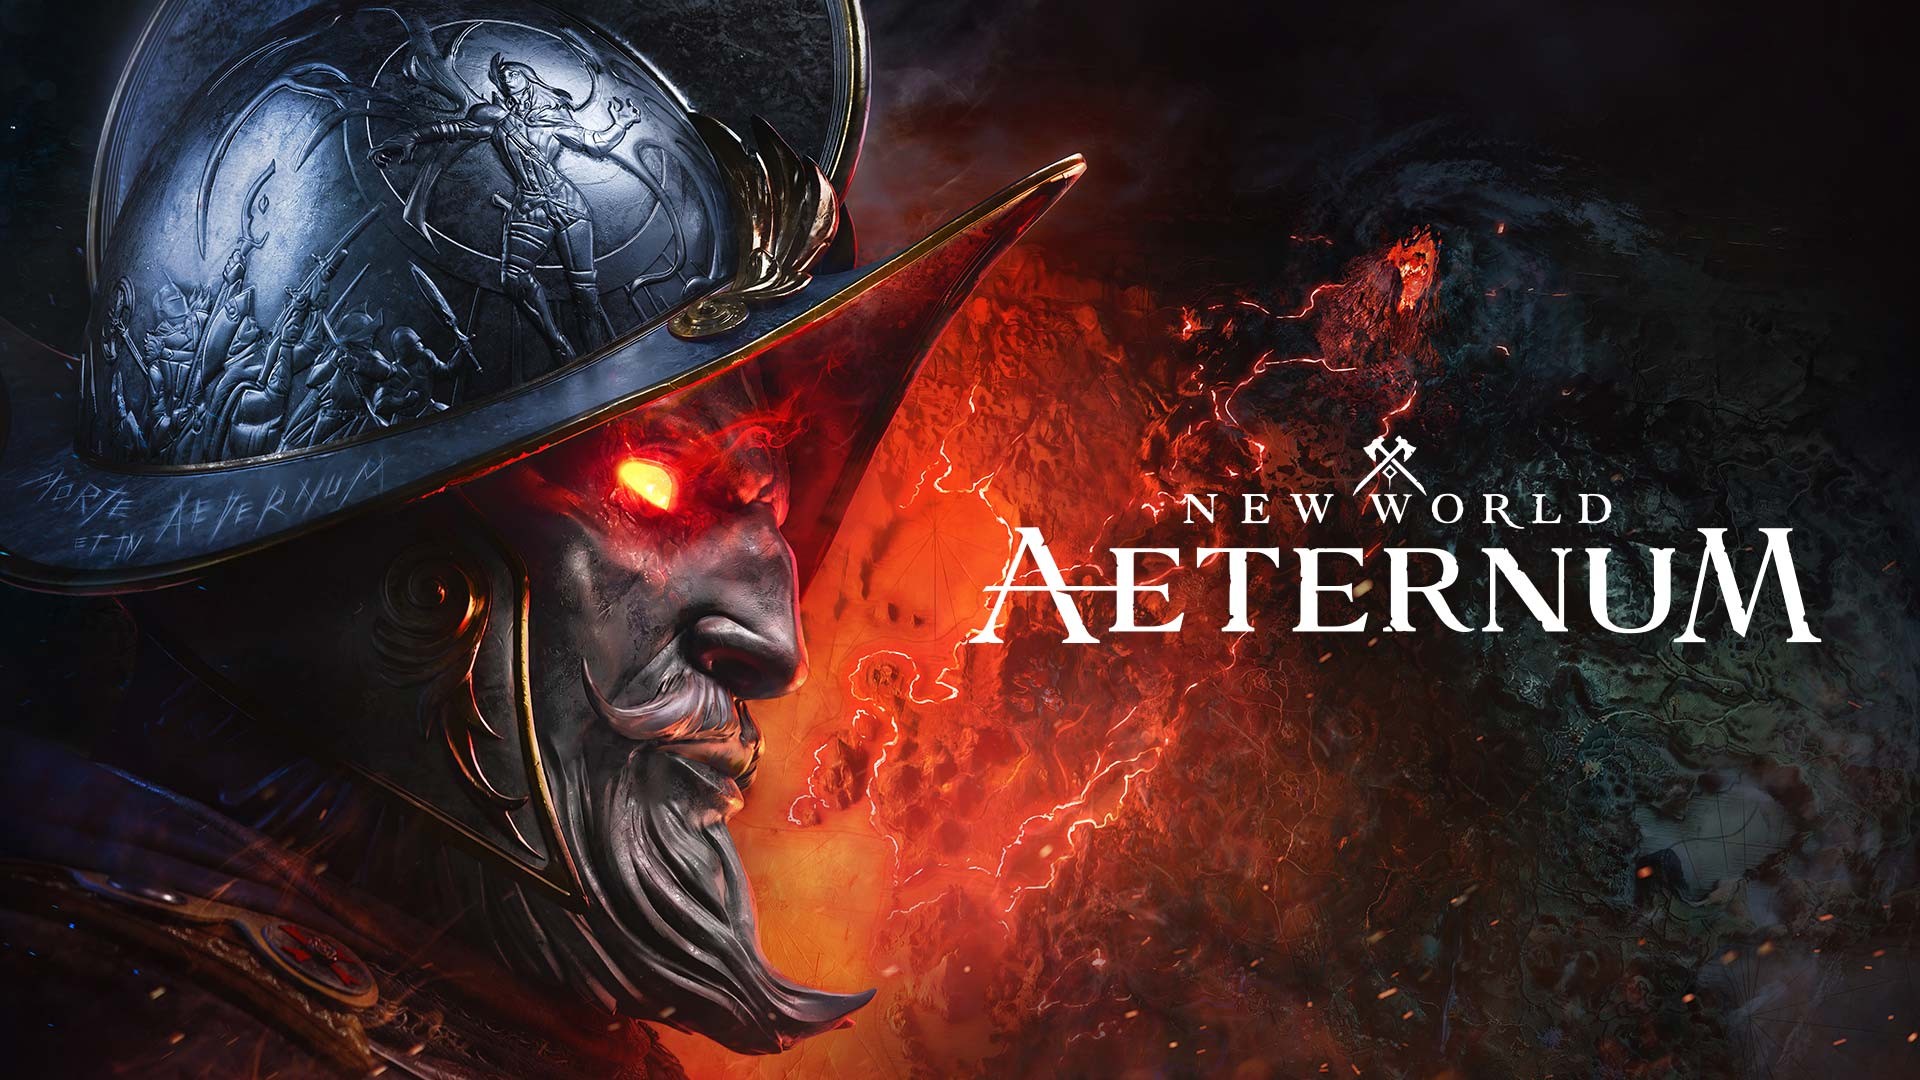 New World zmieni się w New World: Aeternum. Nowa lepsza wersja gry!